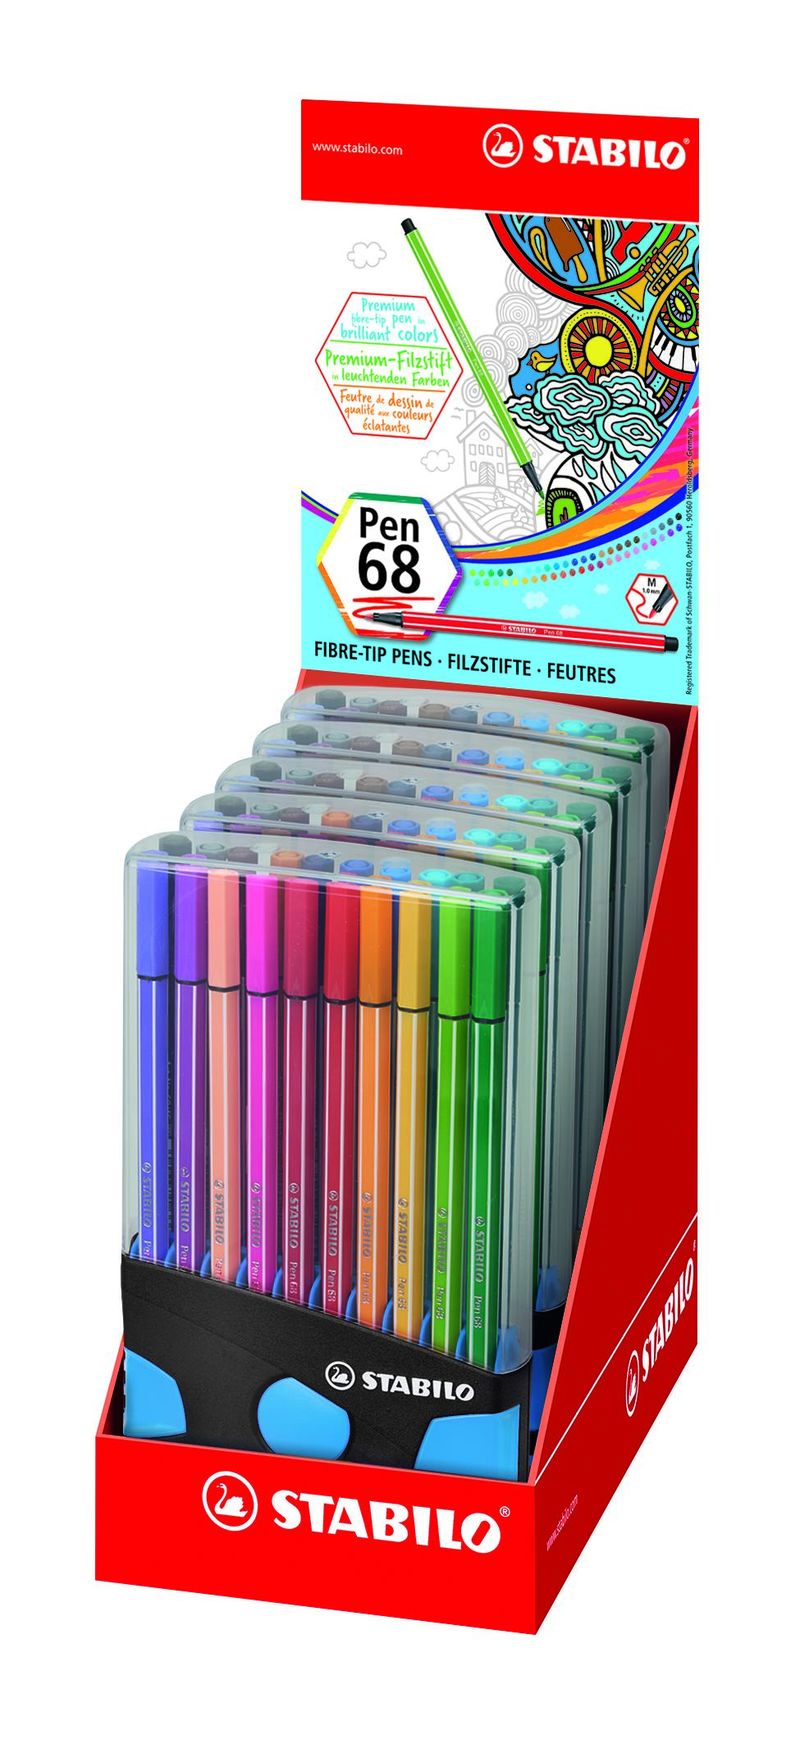 c / 20 stabilo pen color parade ant / light bl r: 6820-04-04